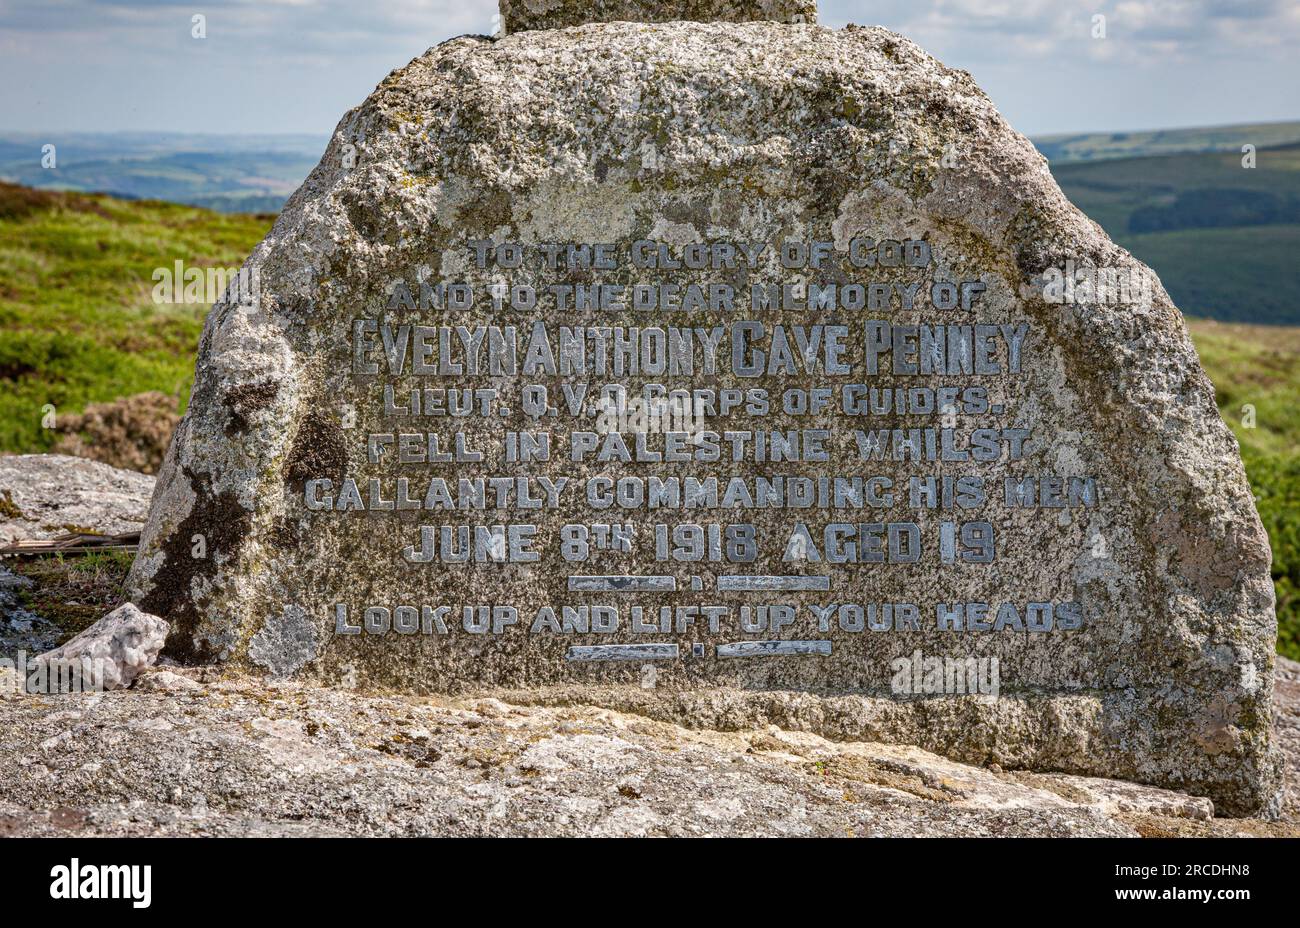 El monumento conmemorativo de la cueva de Evelyn Anthony Penney se cruza cerca de Yar Tor en Dartmoor Devon Reino Unido Foto de stock